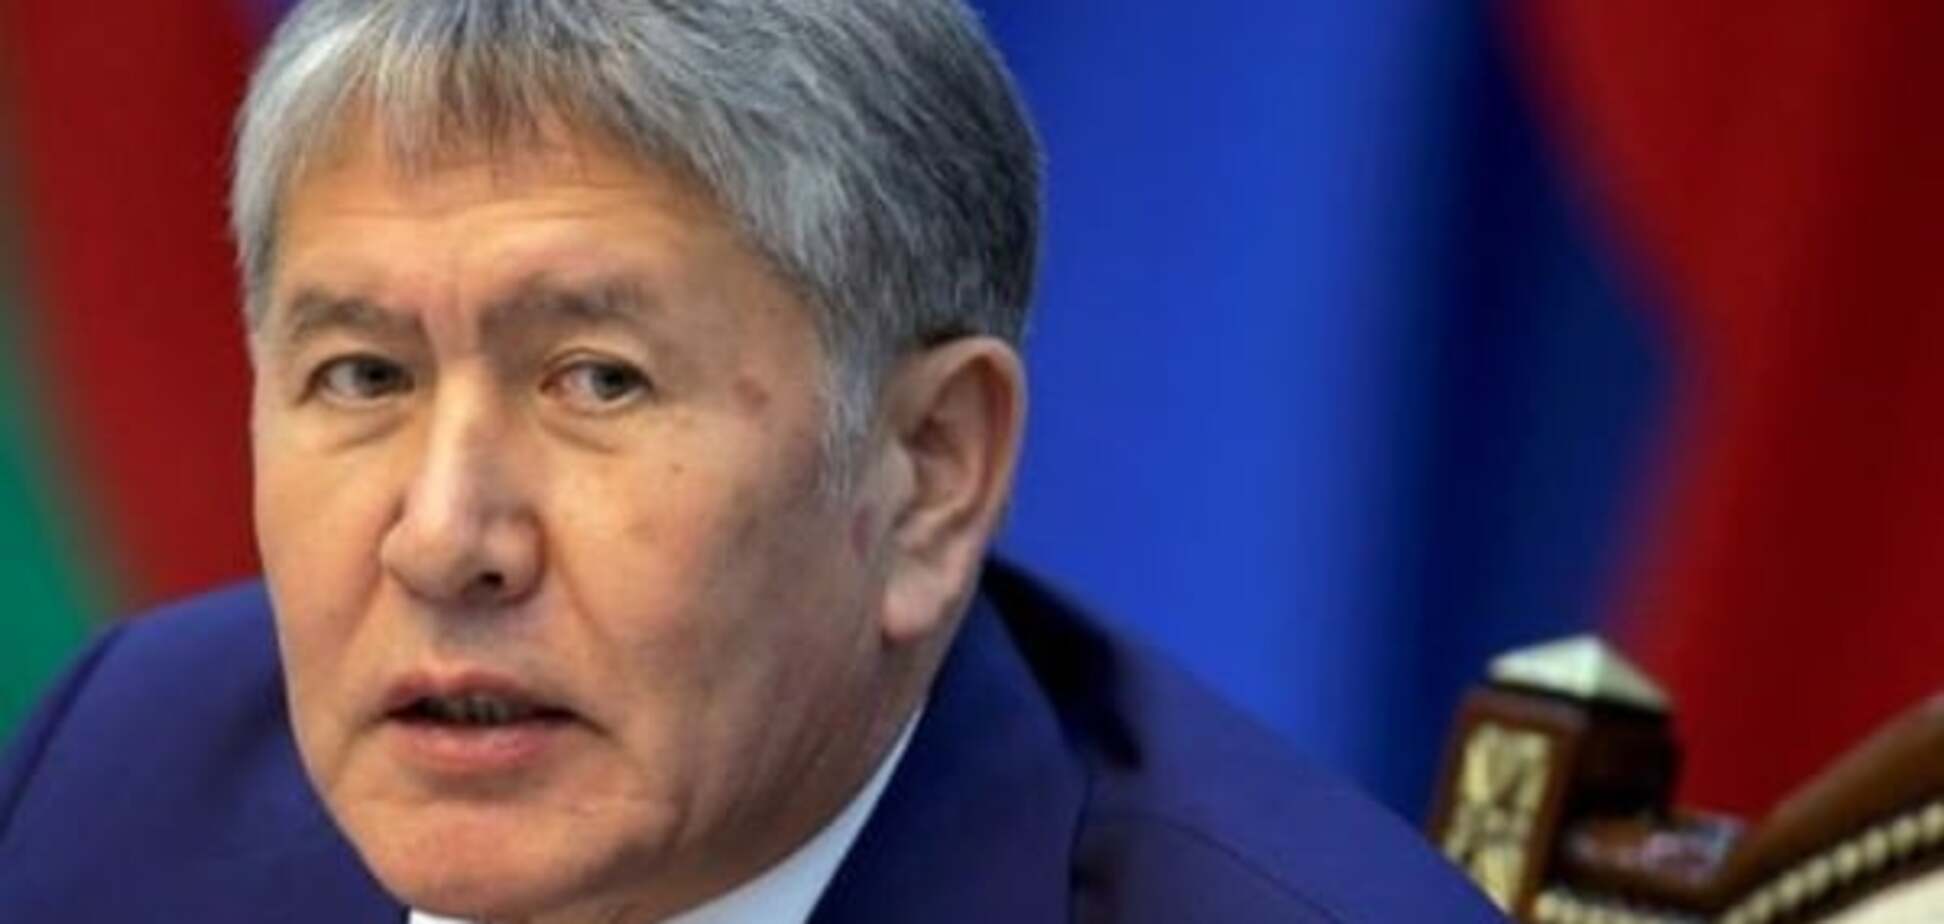 Необходима срочная госпитализация: у главы Киргизстана обнаружили проблемы с сердцем